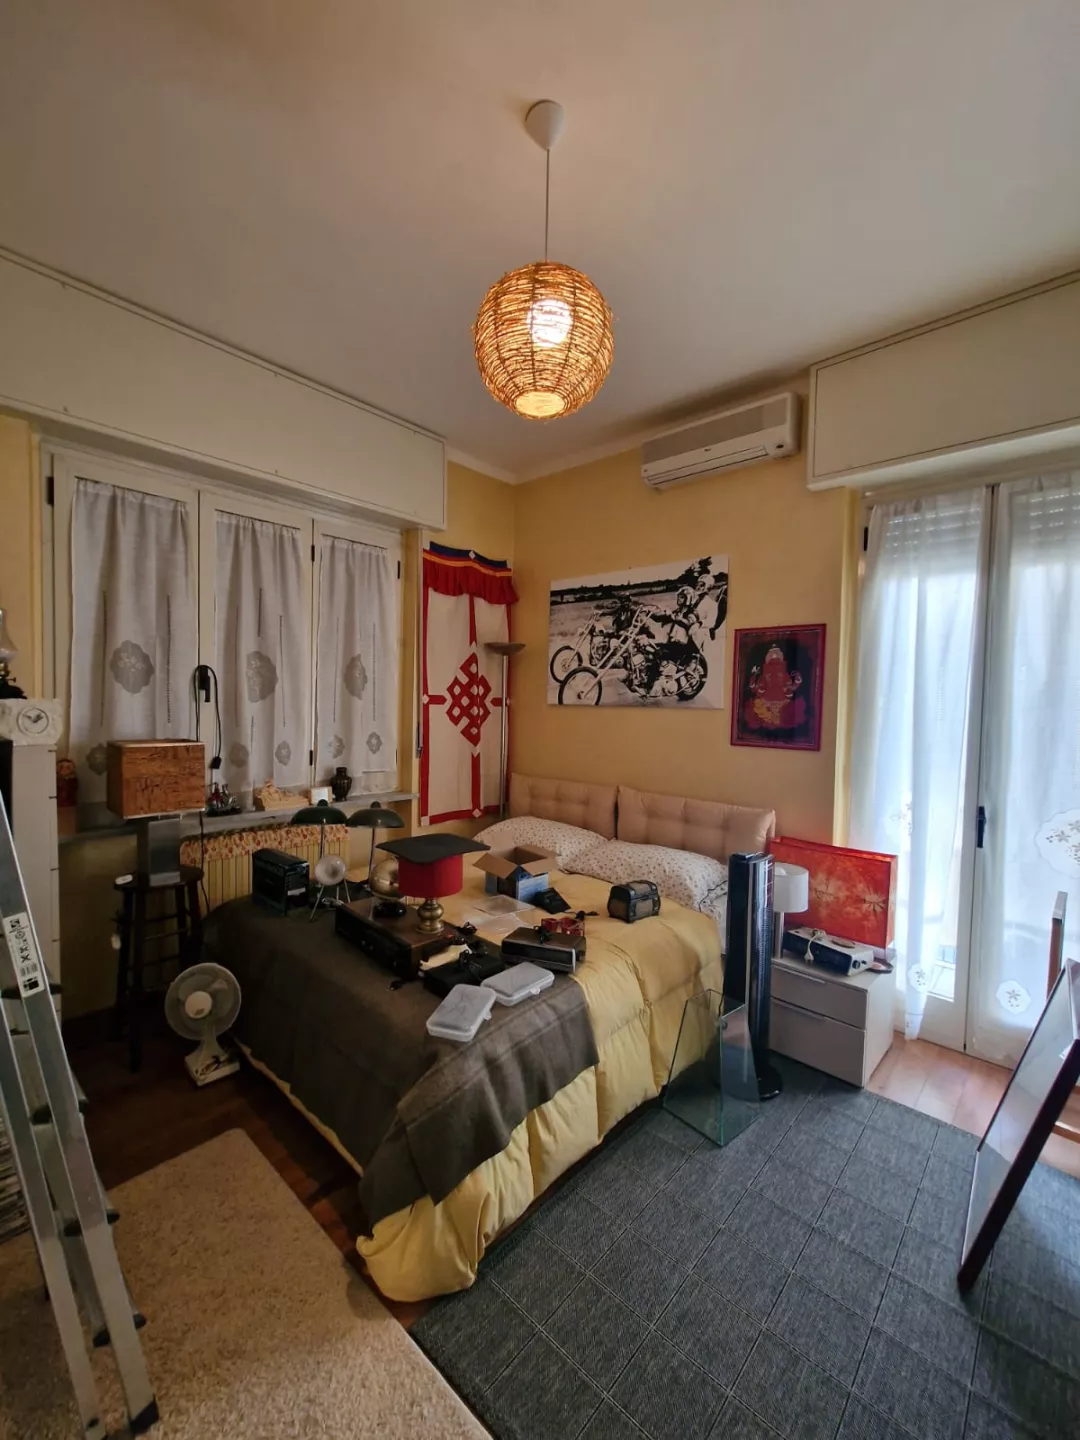 Immagine per Appartamento in vendita a Vercelli corso Rigola 76